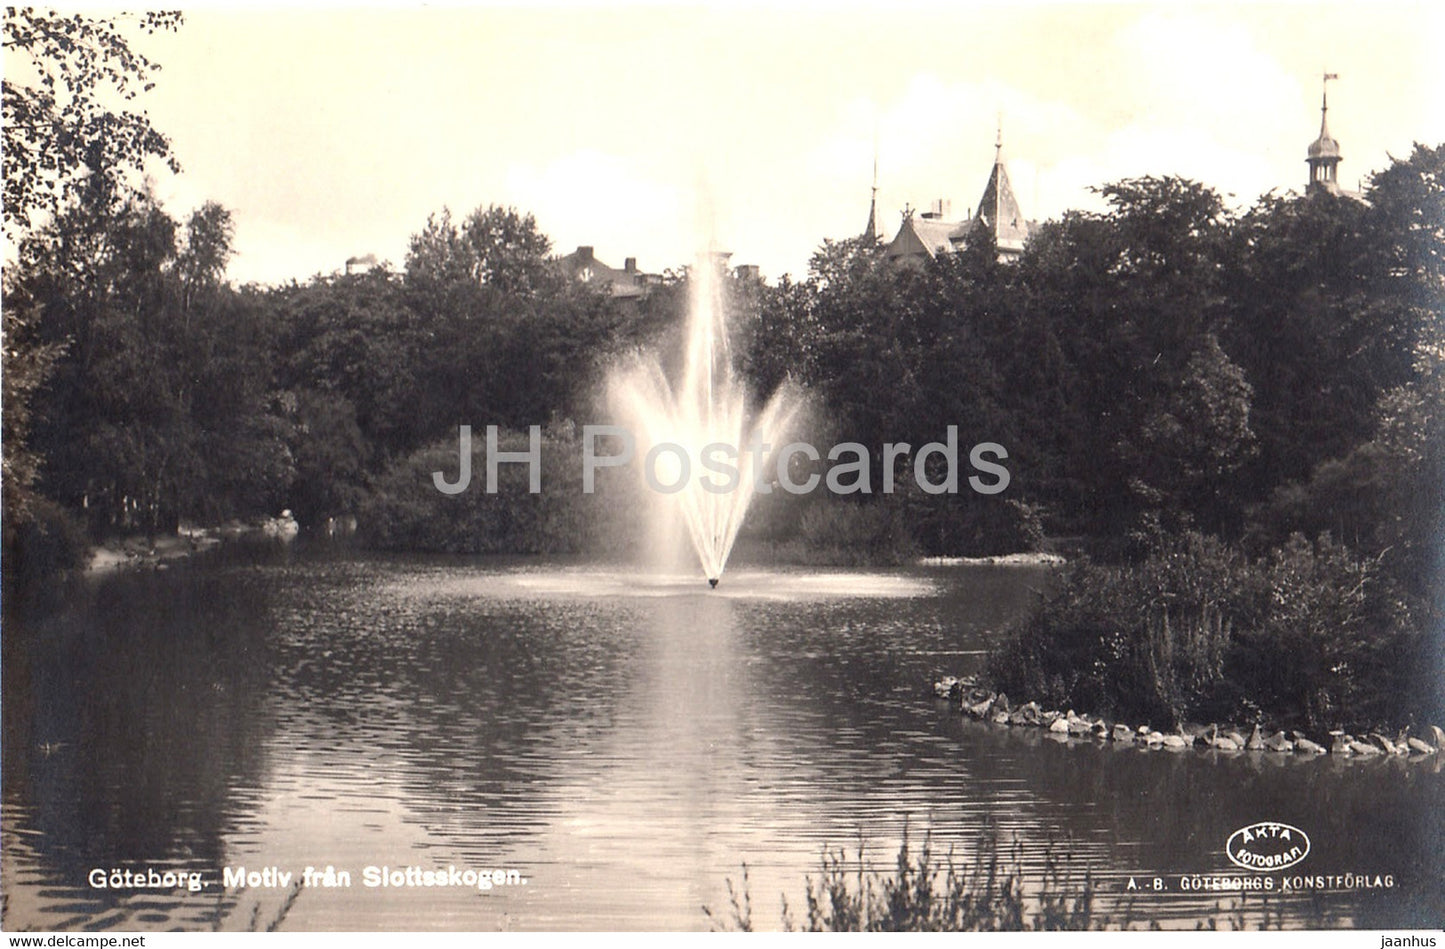 Goteborg - Motiv fran Slottsskogen - 3 - old postcard - Sweden - unused - JH Postcards